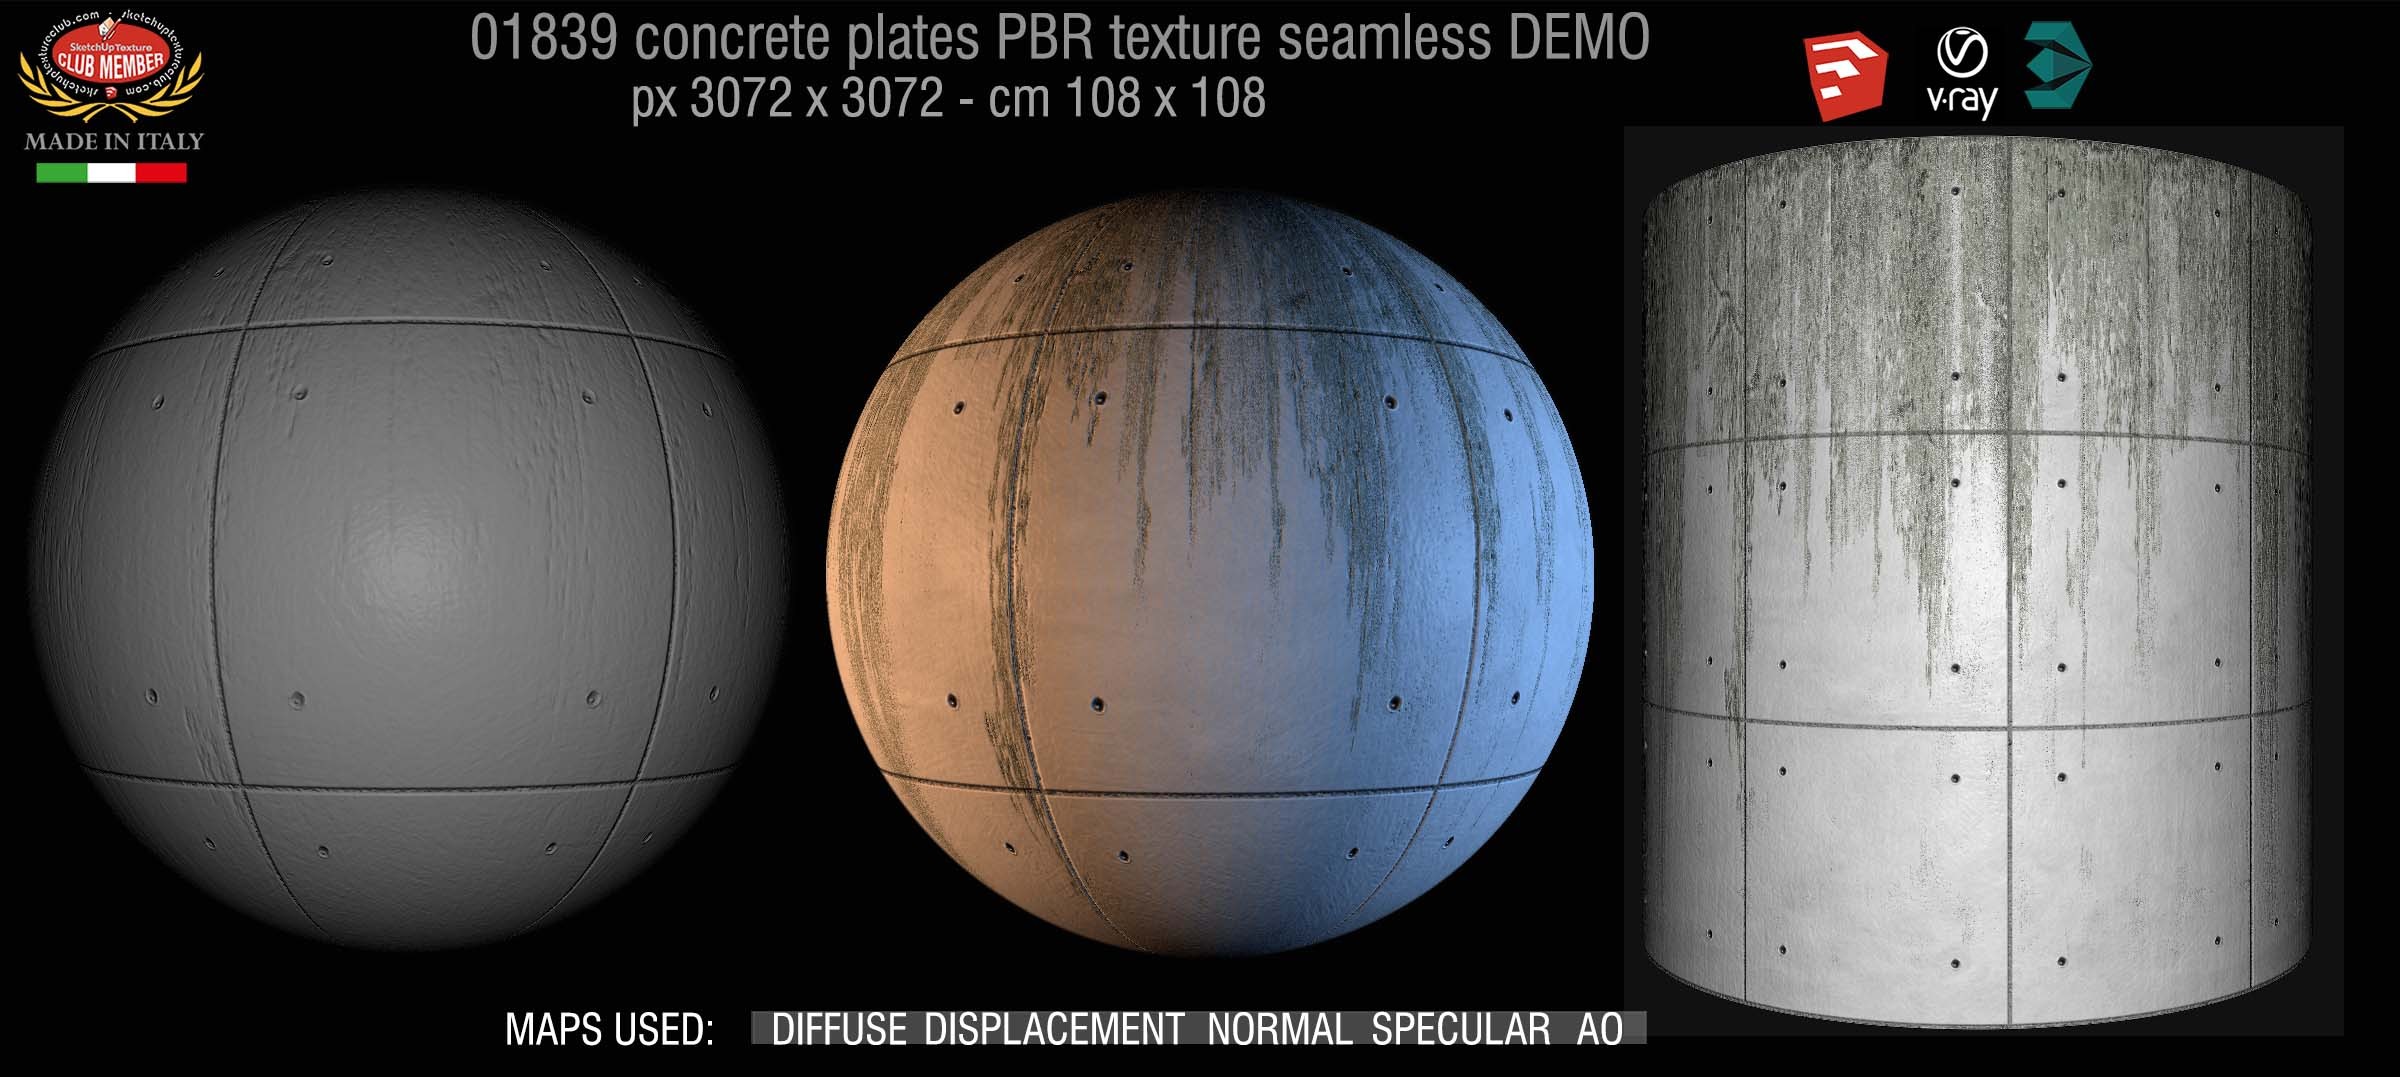 01839 Tadao Ando concrete plates PBR texture seamless DEMO